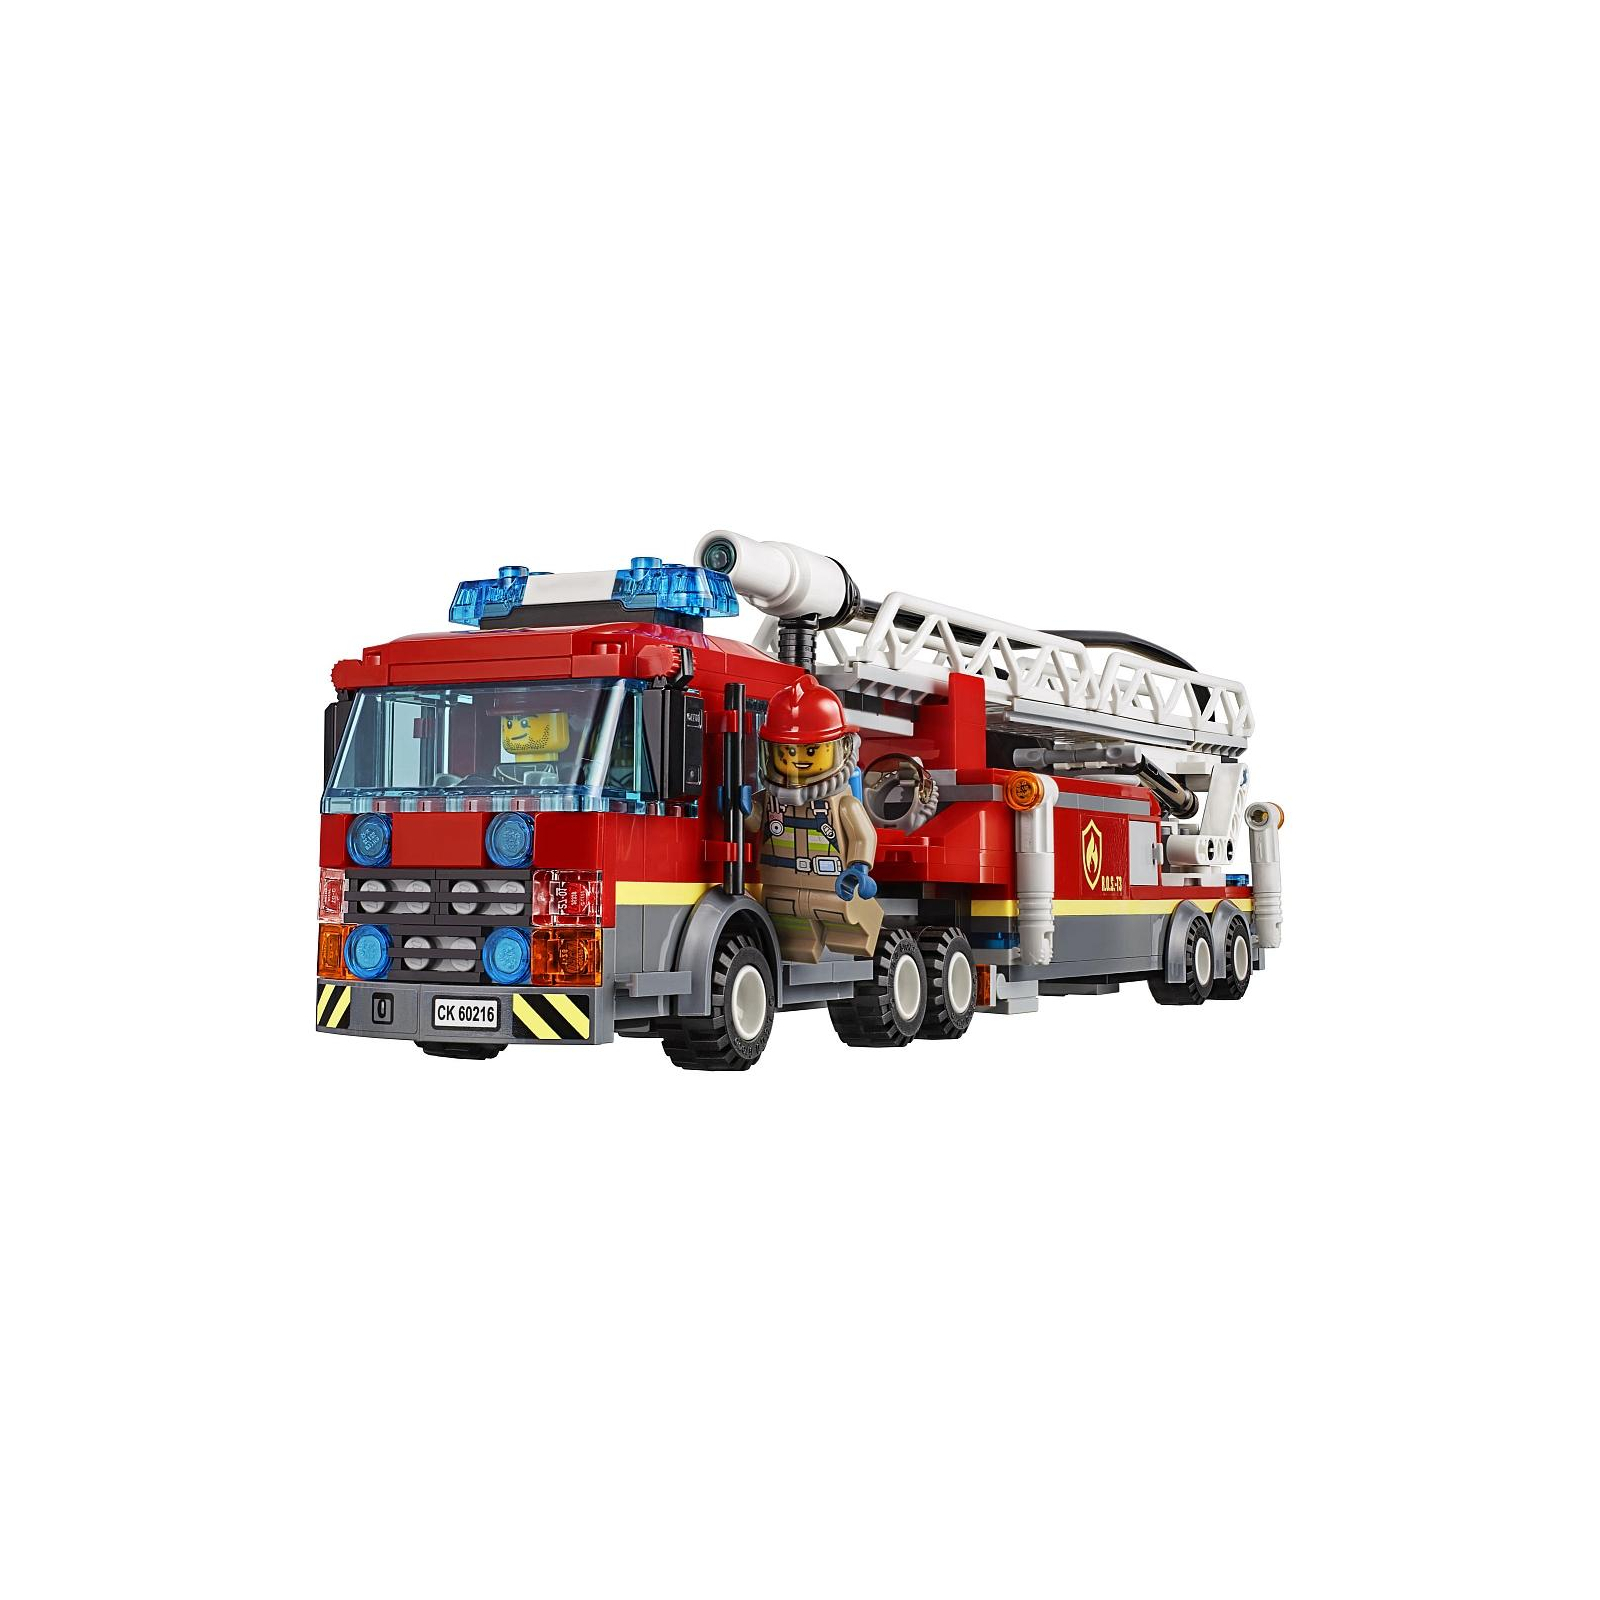 Конструктор LEGO City Центральная пожарная станция 943 детали (60216) изображение 5